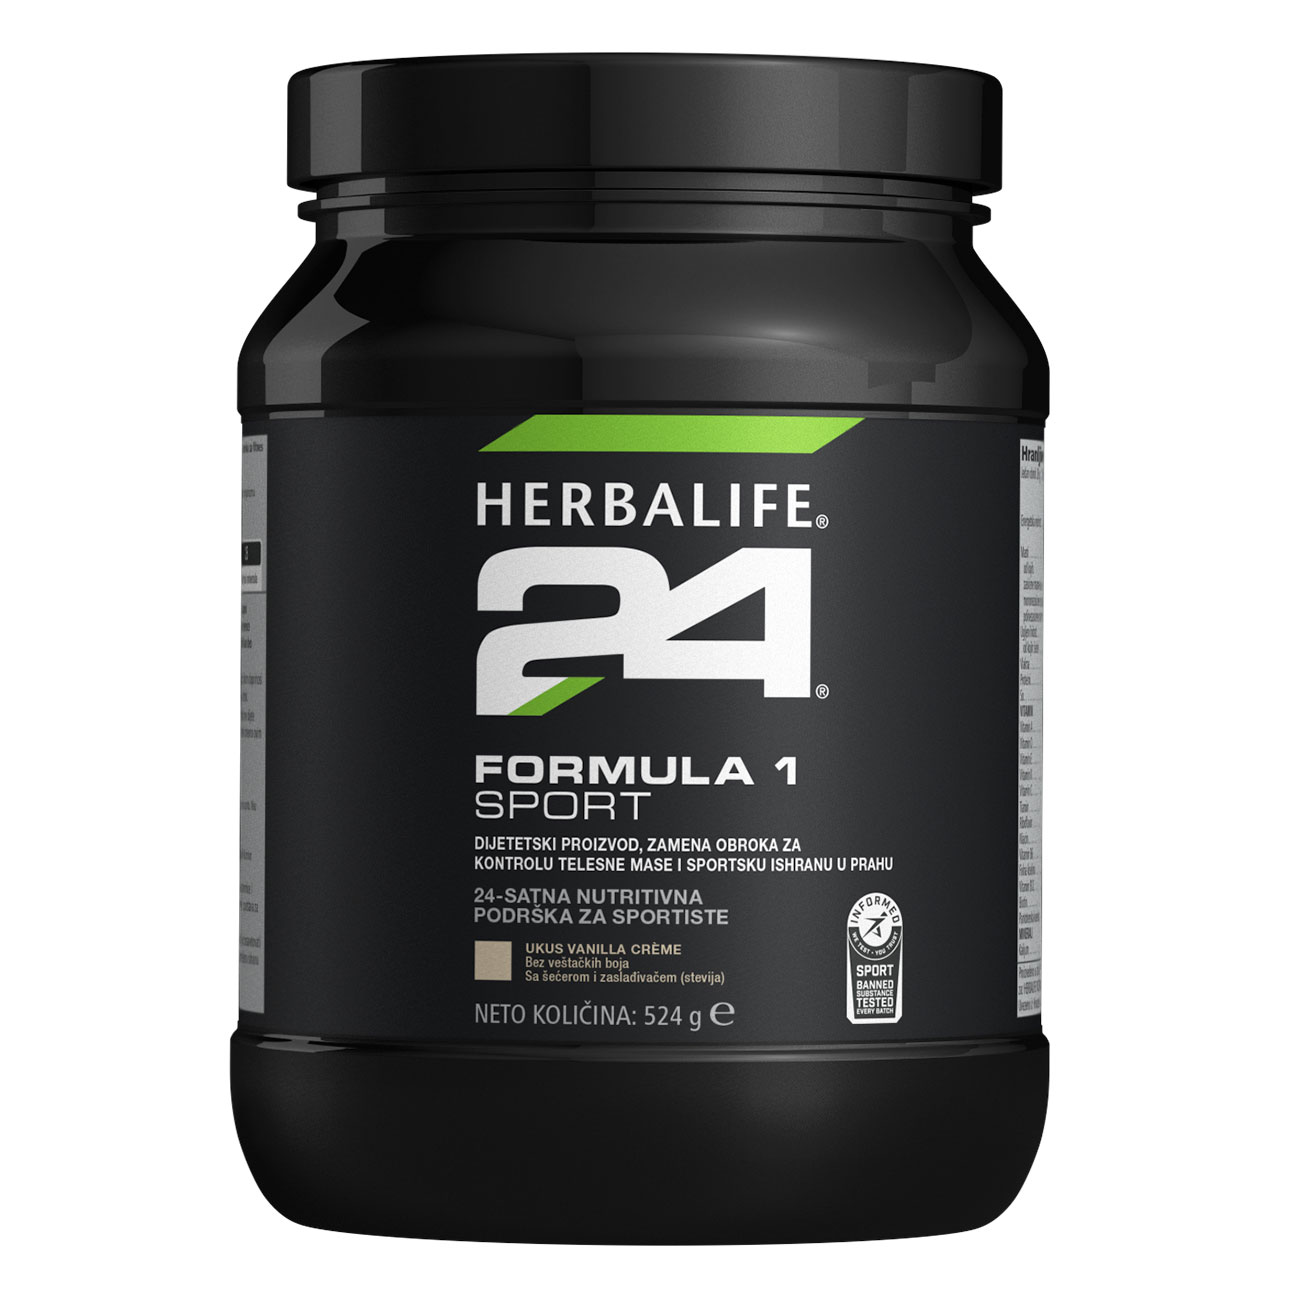 Herbalife24® Formula 1 Sport Dijetetski proizvod, zamena obroka za kontrolu telesne mase i sportsku ishranu u prahu ukus Vanilla Crème slika proizvoda.